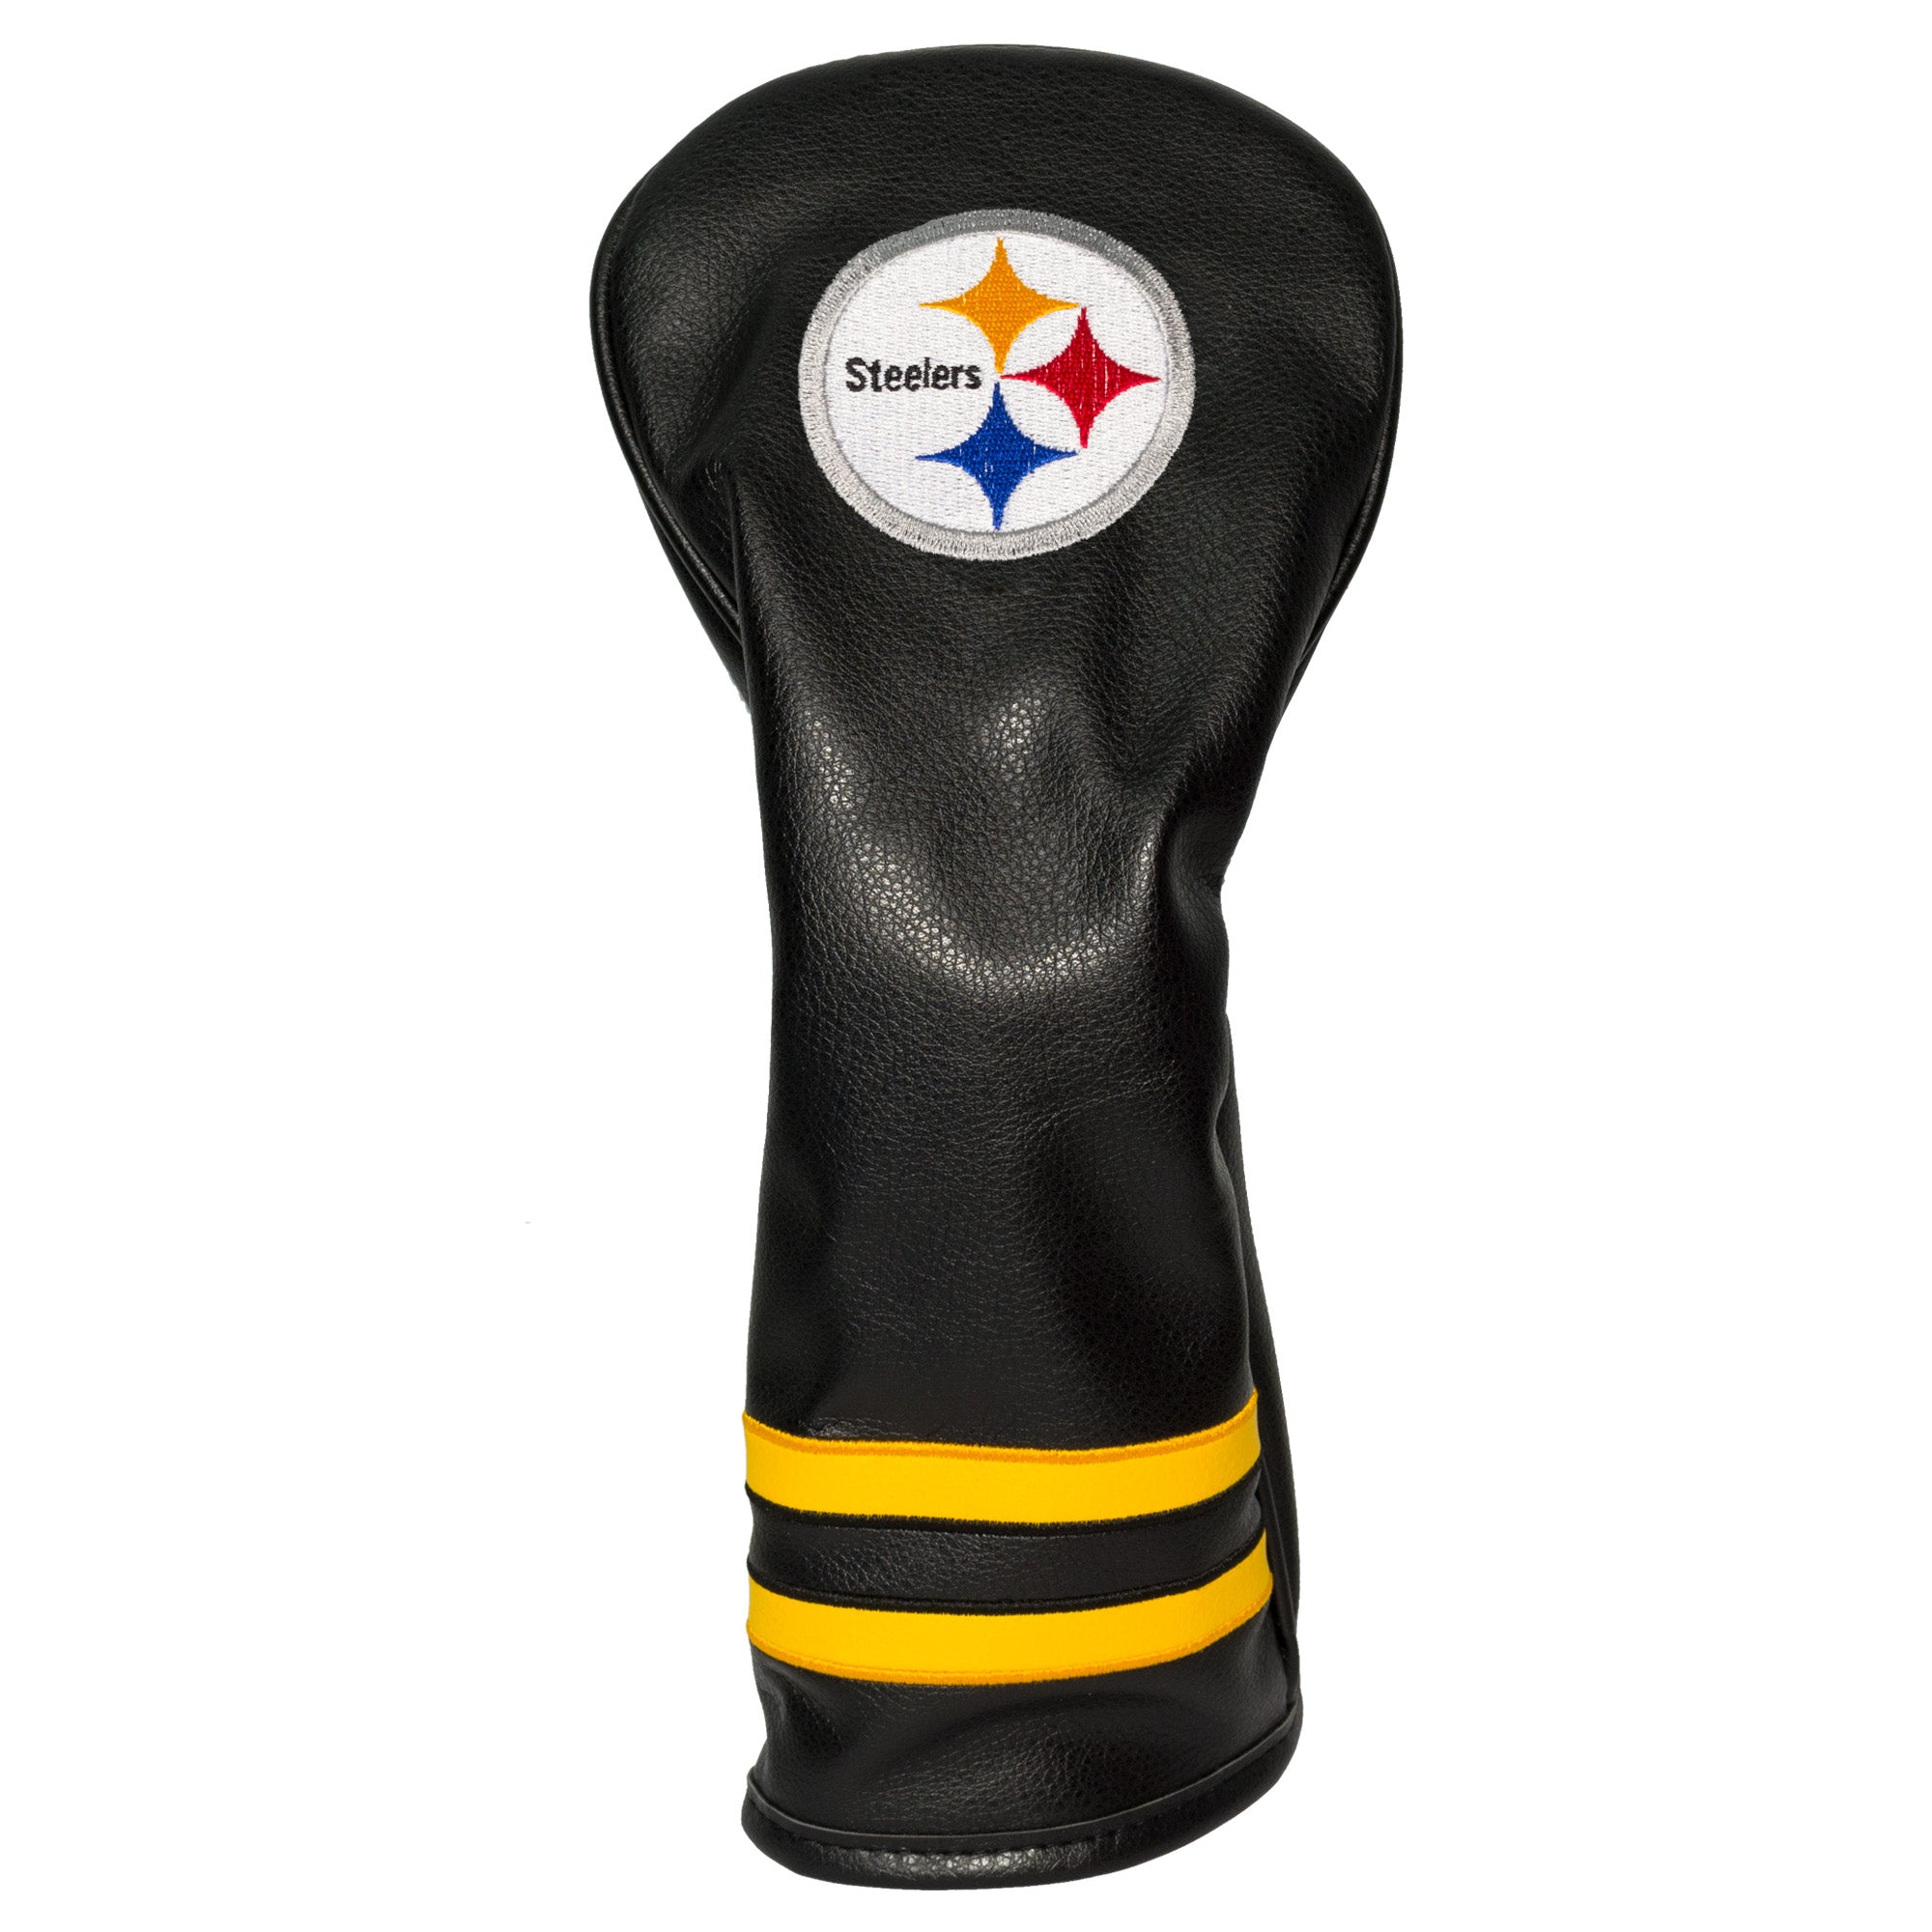 Pittsburgh Steelers Vintage Fairway Headcover